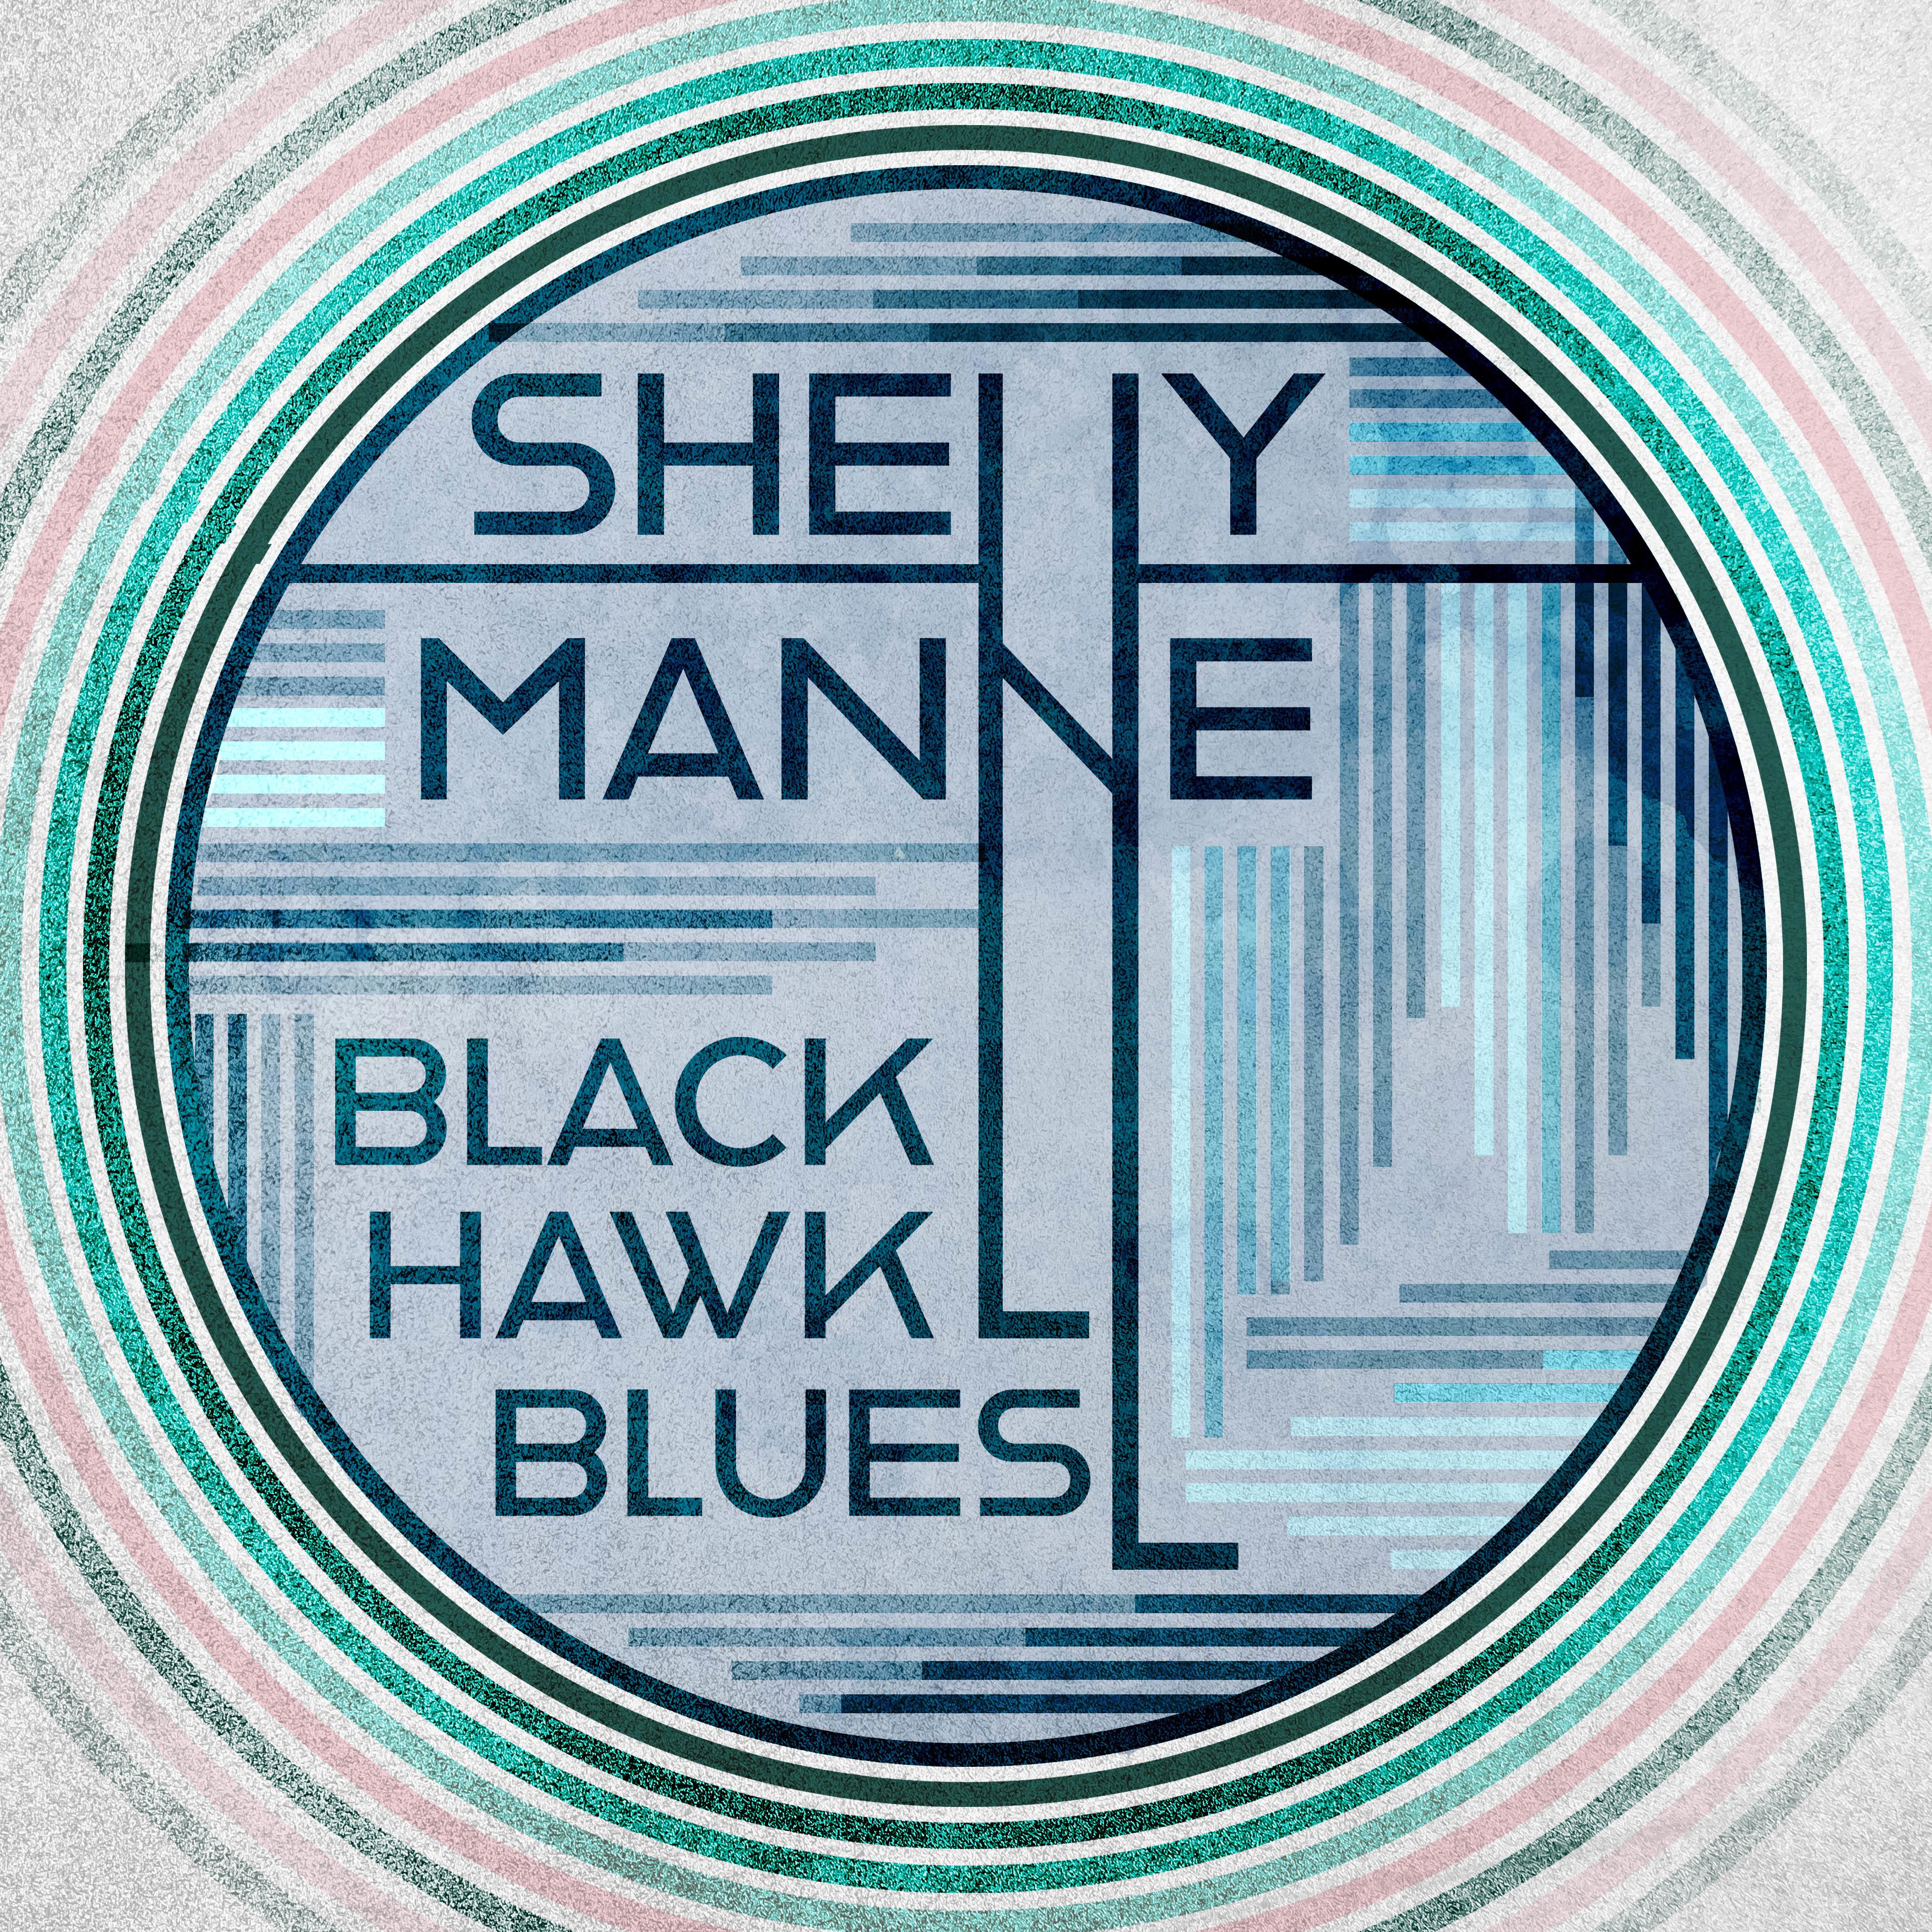 Black Hawk Blues